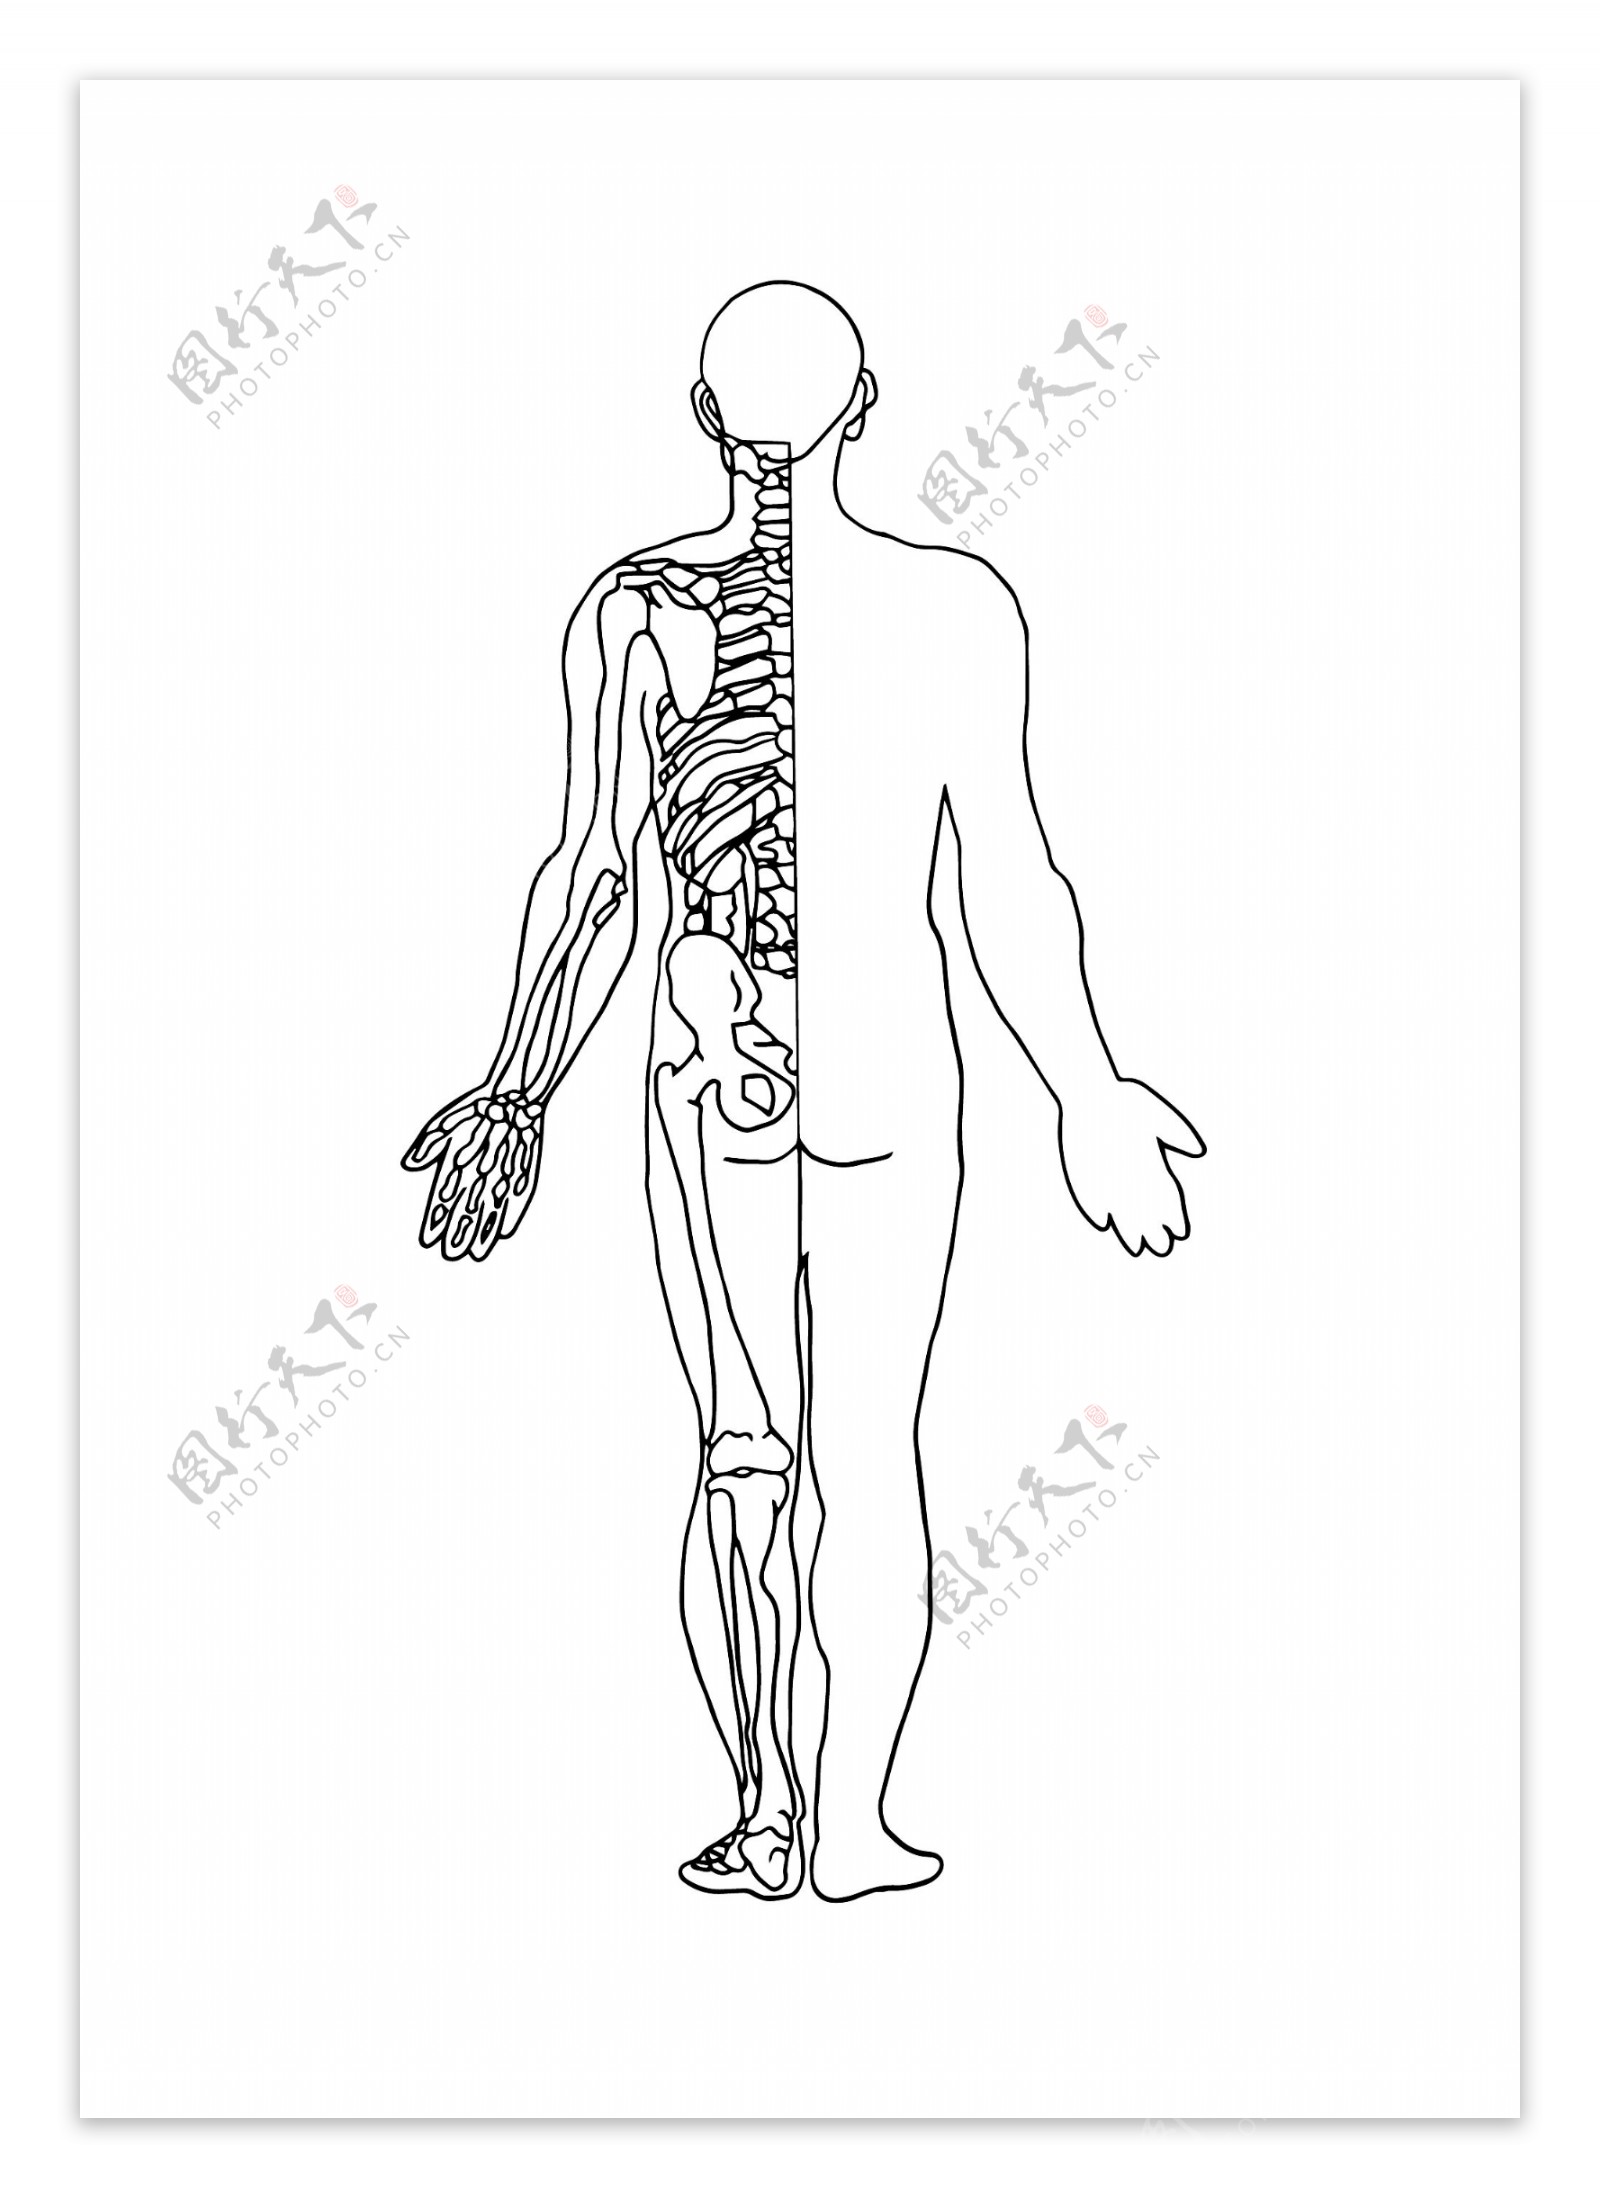 手绘黑白线条人体骨骼图背面